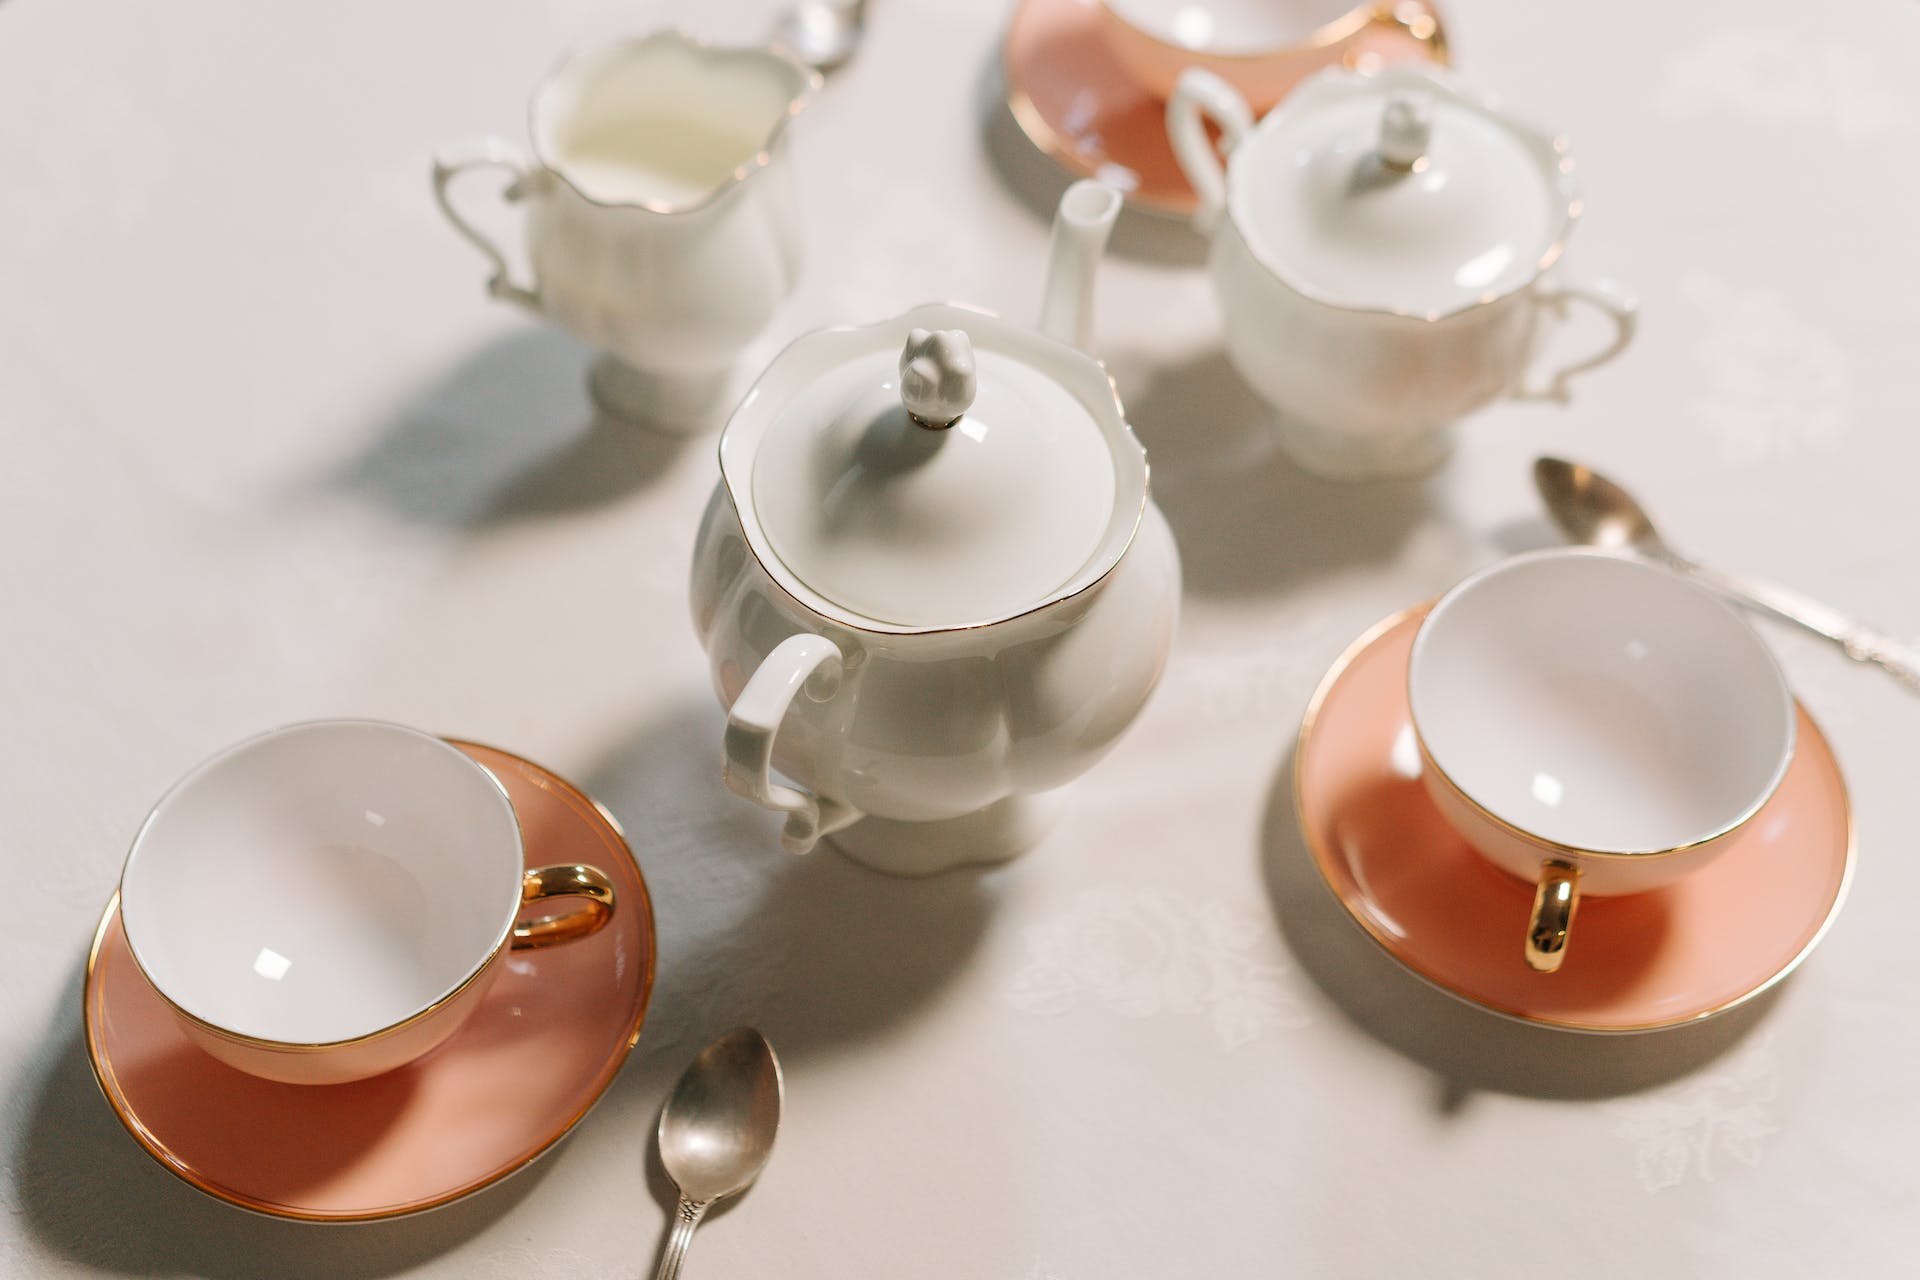 Service à thé rose et blanc. | Source : Pexels